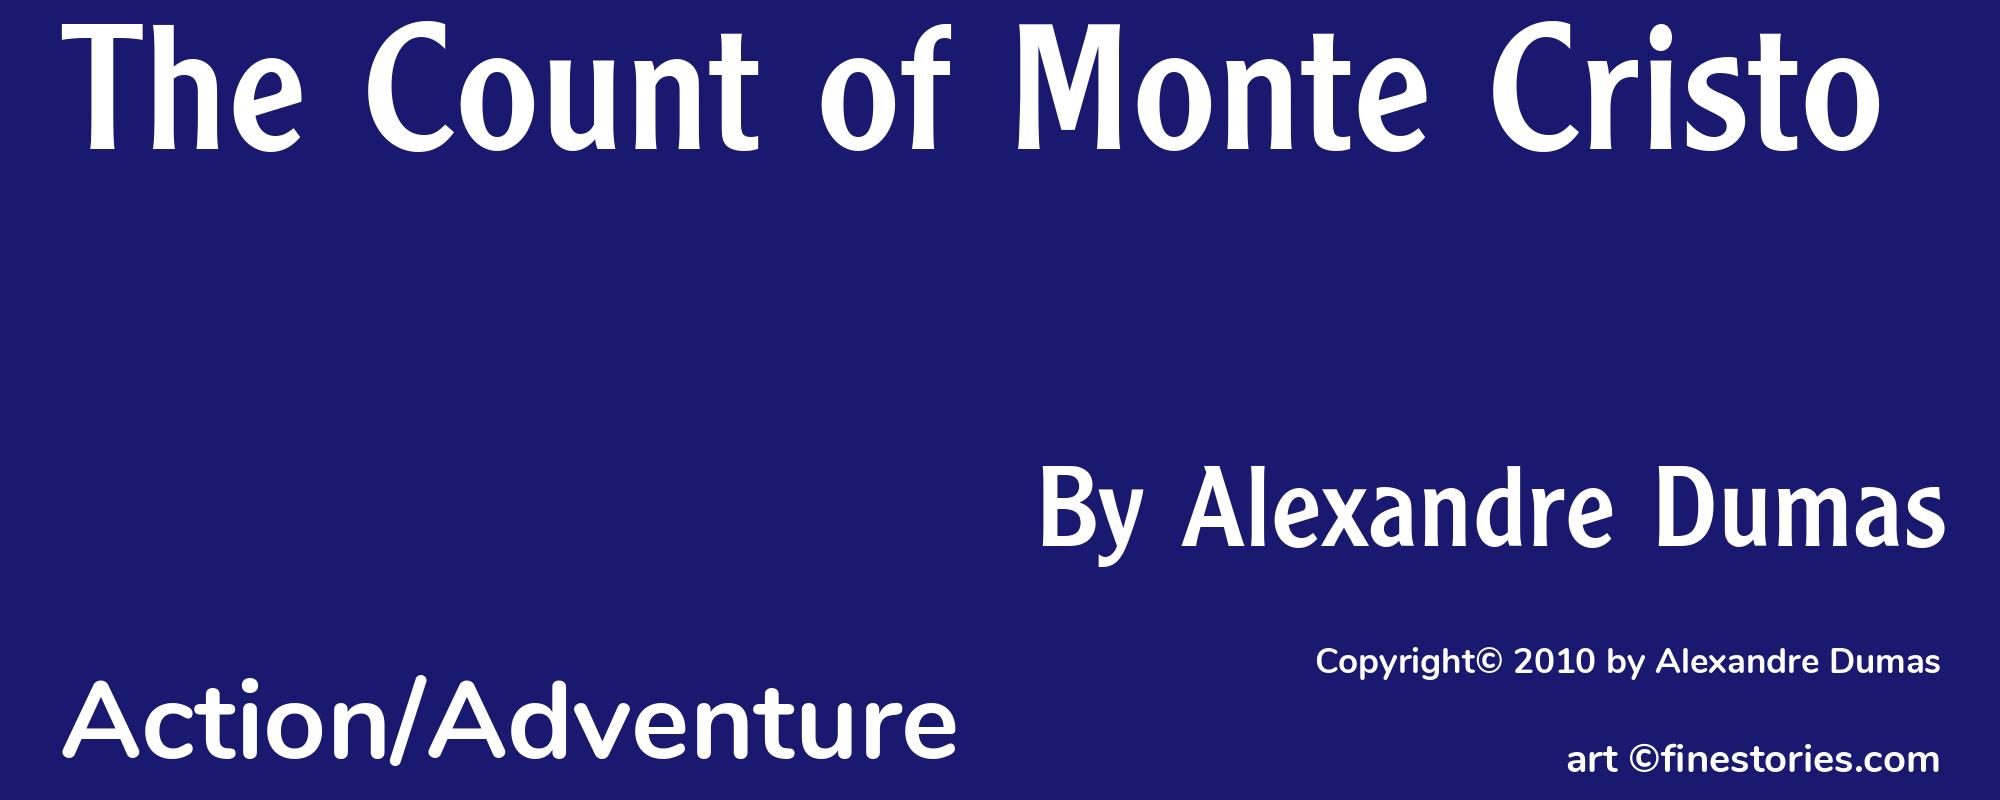 The Count of Monte Cristo - Cover